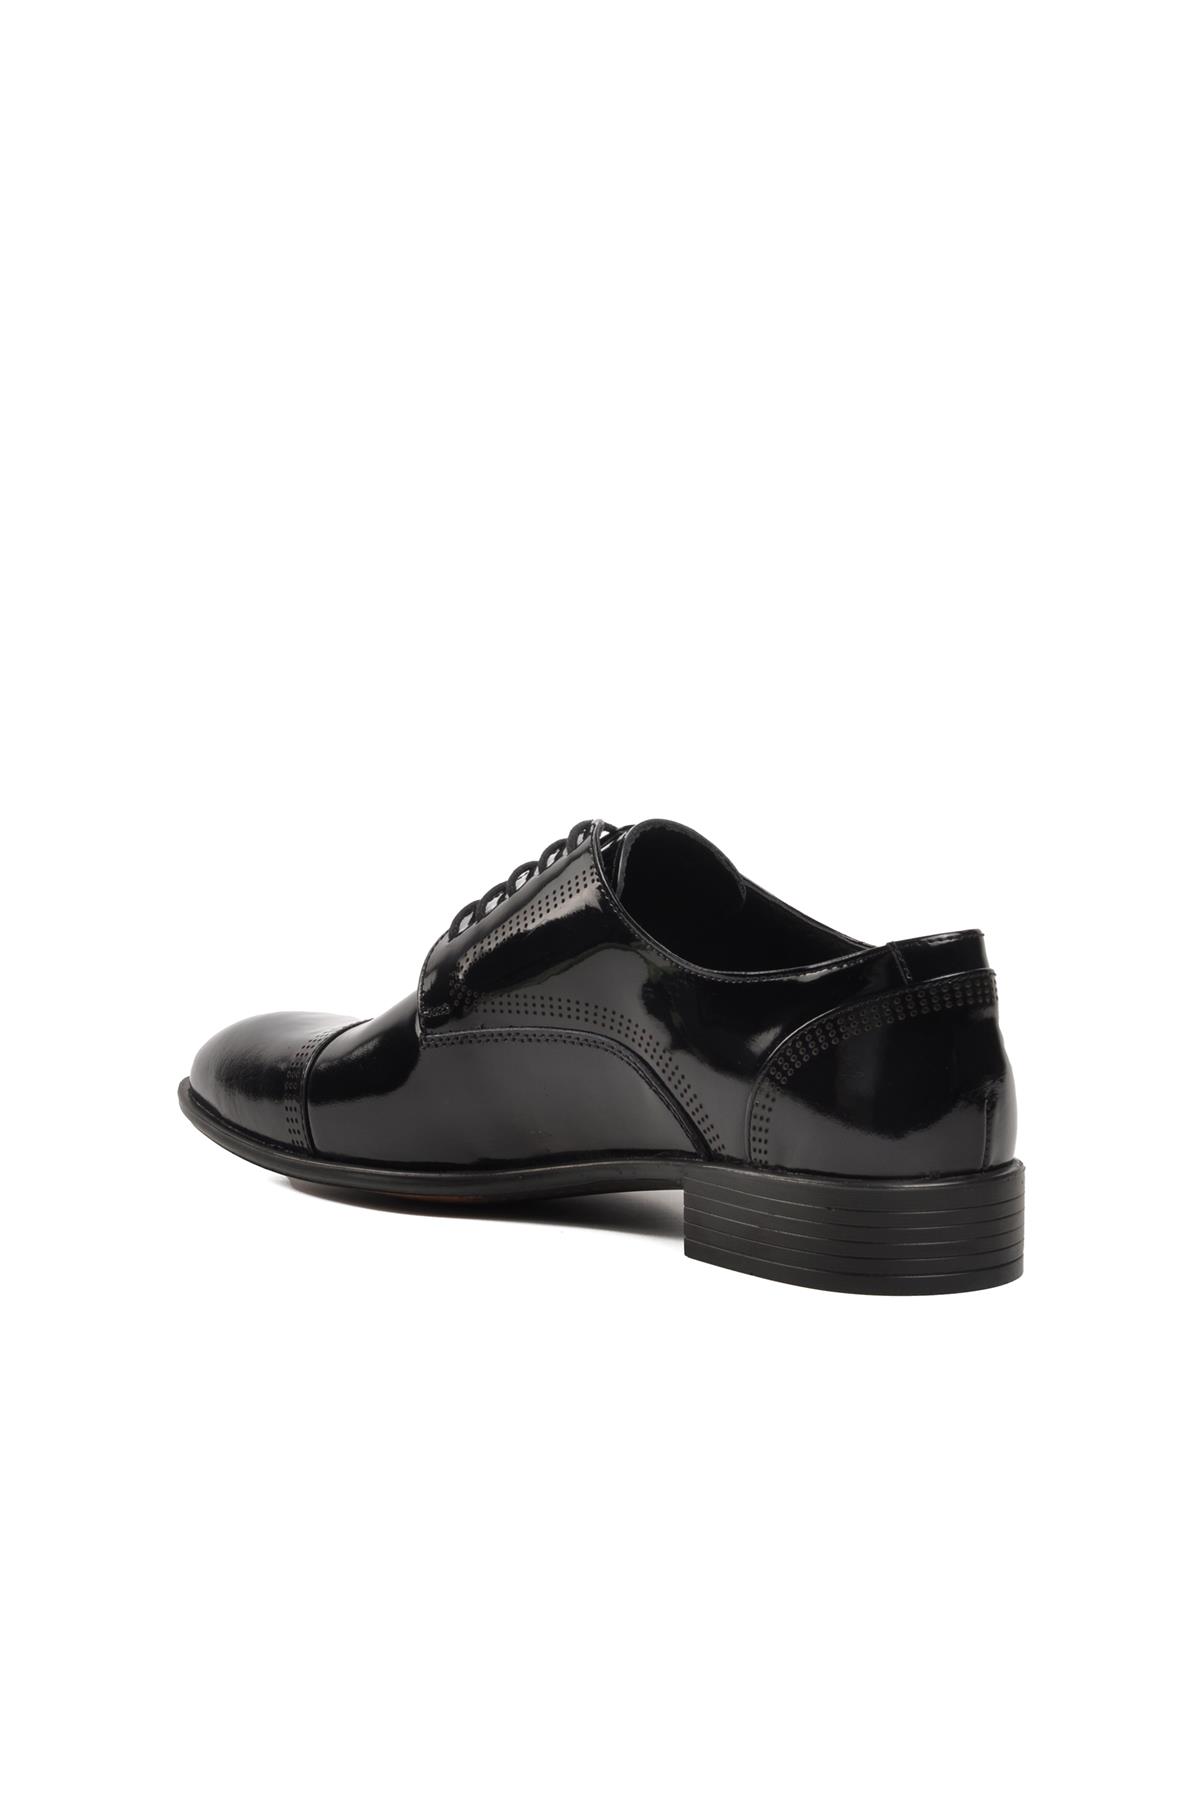 Ayakmod 387 Siyah Rugan Hakiki Deri Erkek Klasik Ayakkabı Ayakmod Erkek Klasik Ayakkabı